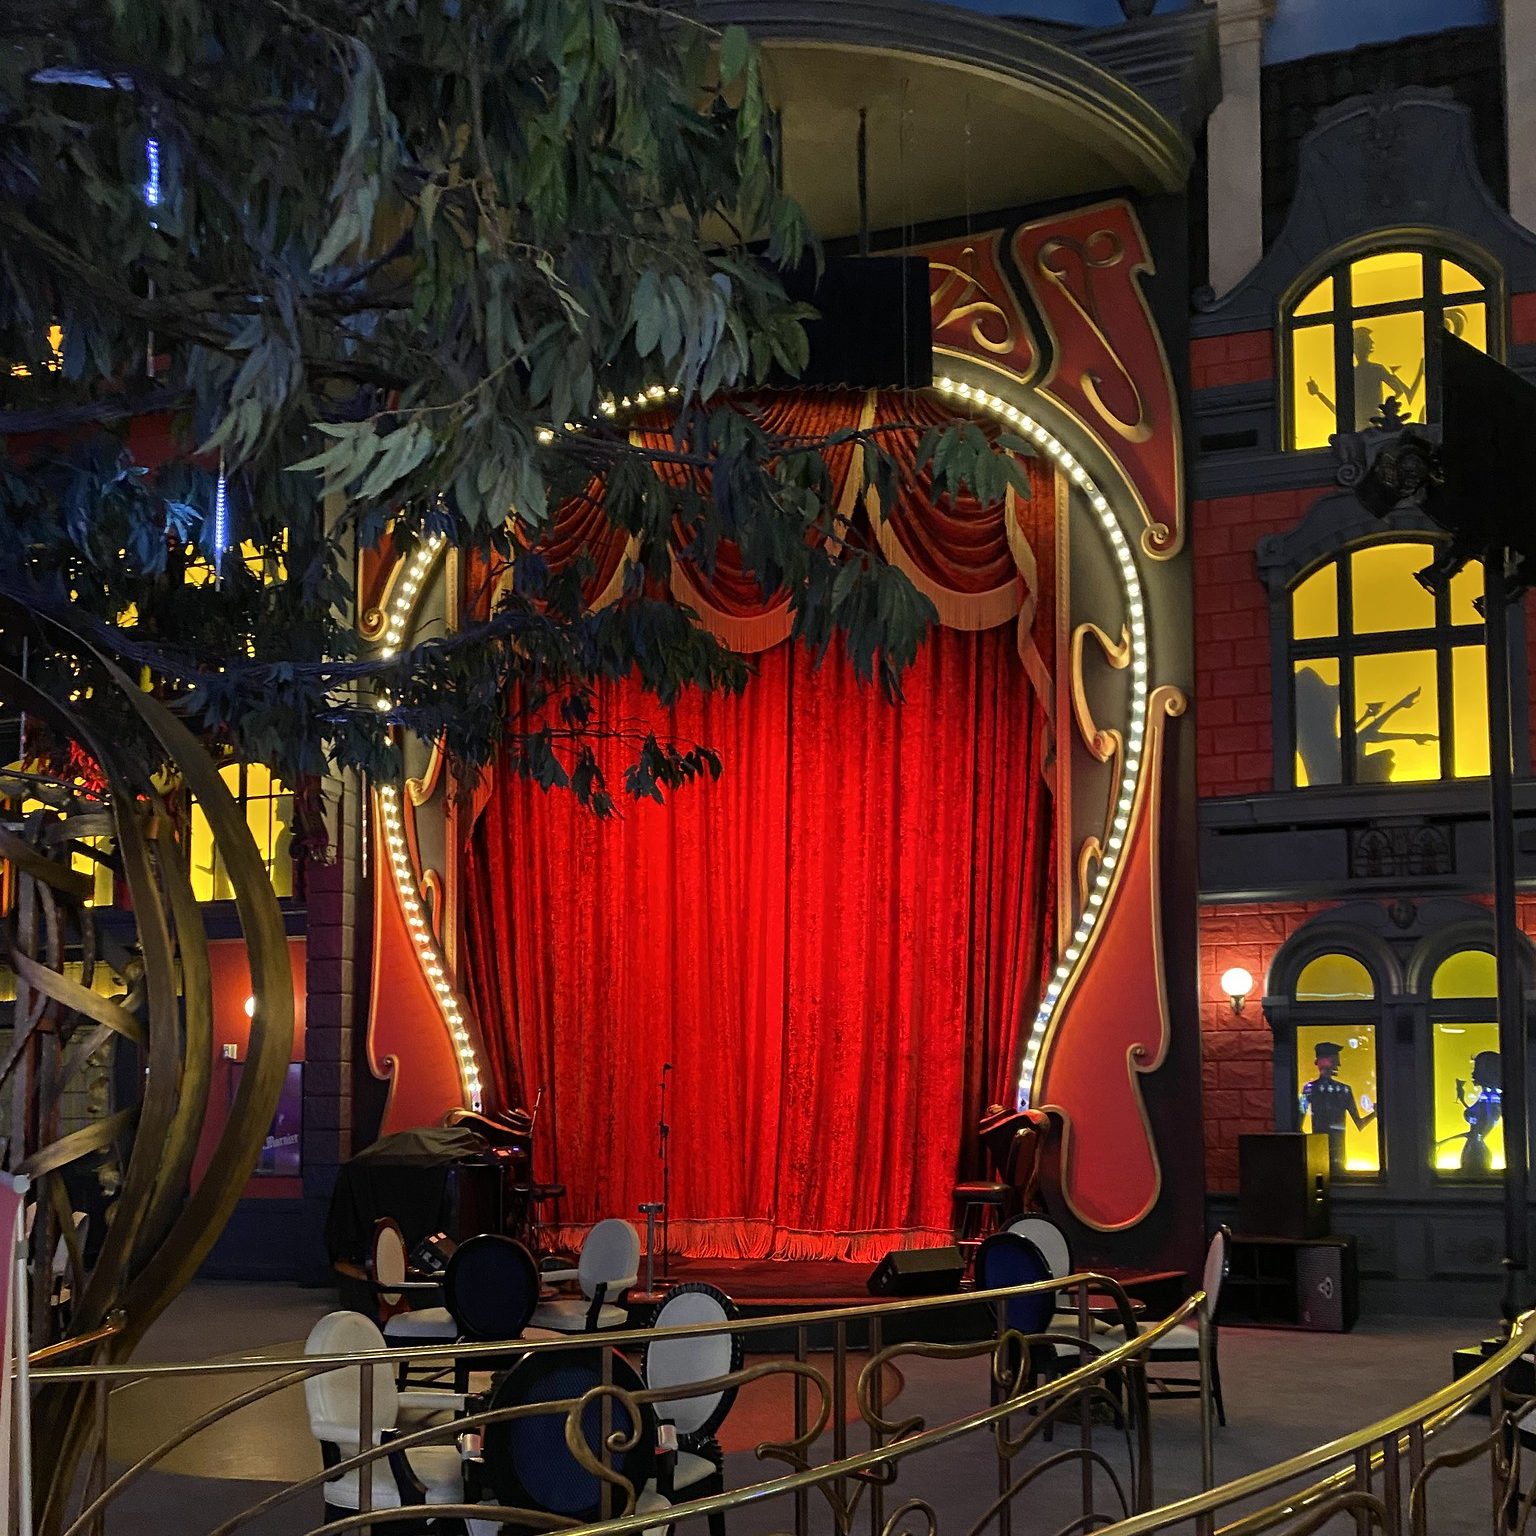 Red curtains at the Paris Theatre in Paris Las Vegas